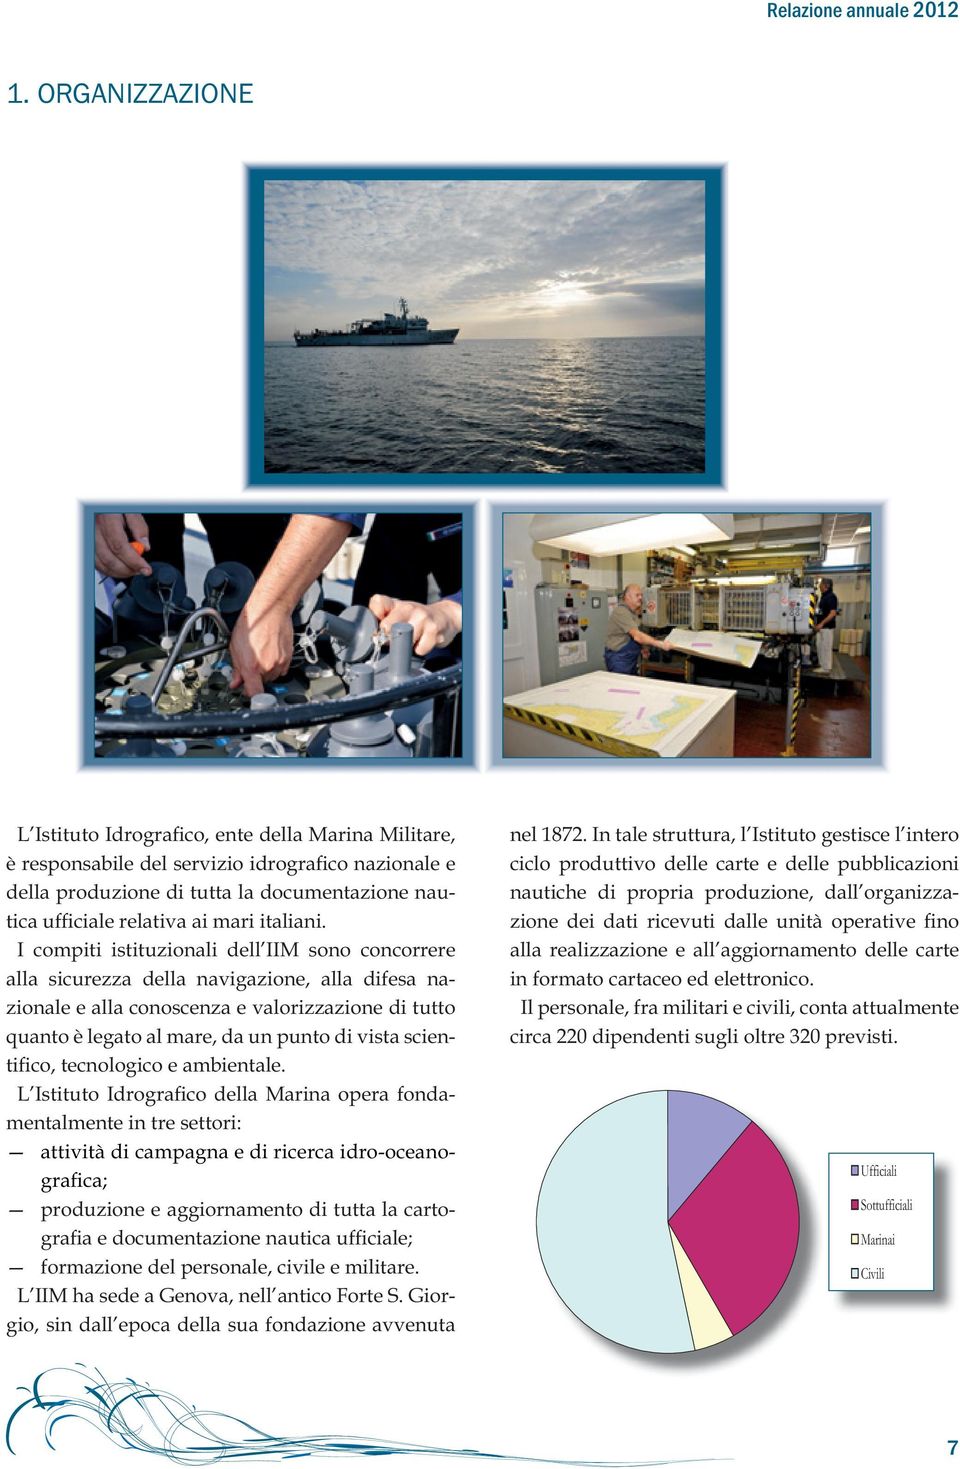 I compiti istituzionali dell IIM sono concorrere alla sicurezza della navigazione, alla difesa nazionale e alla conoscenza e valorizzazione di tutto quanto è legato al mare, da un punto di vista